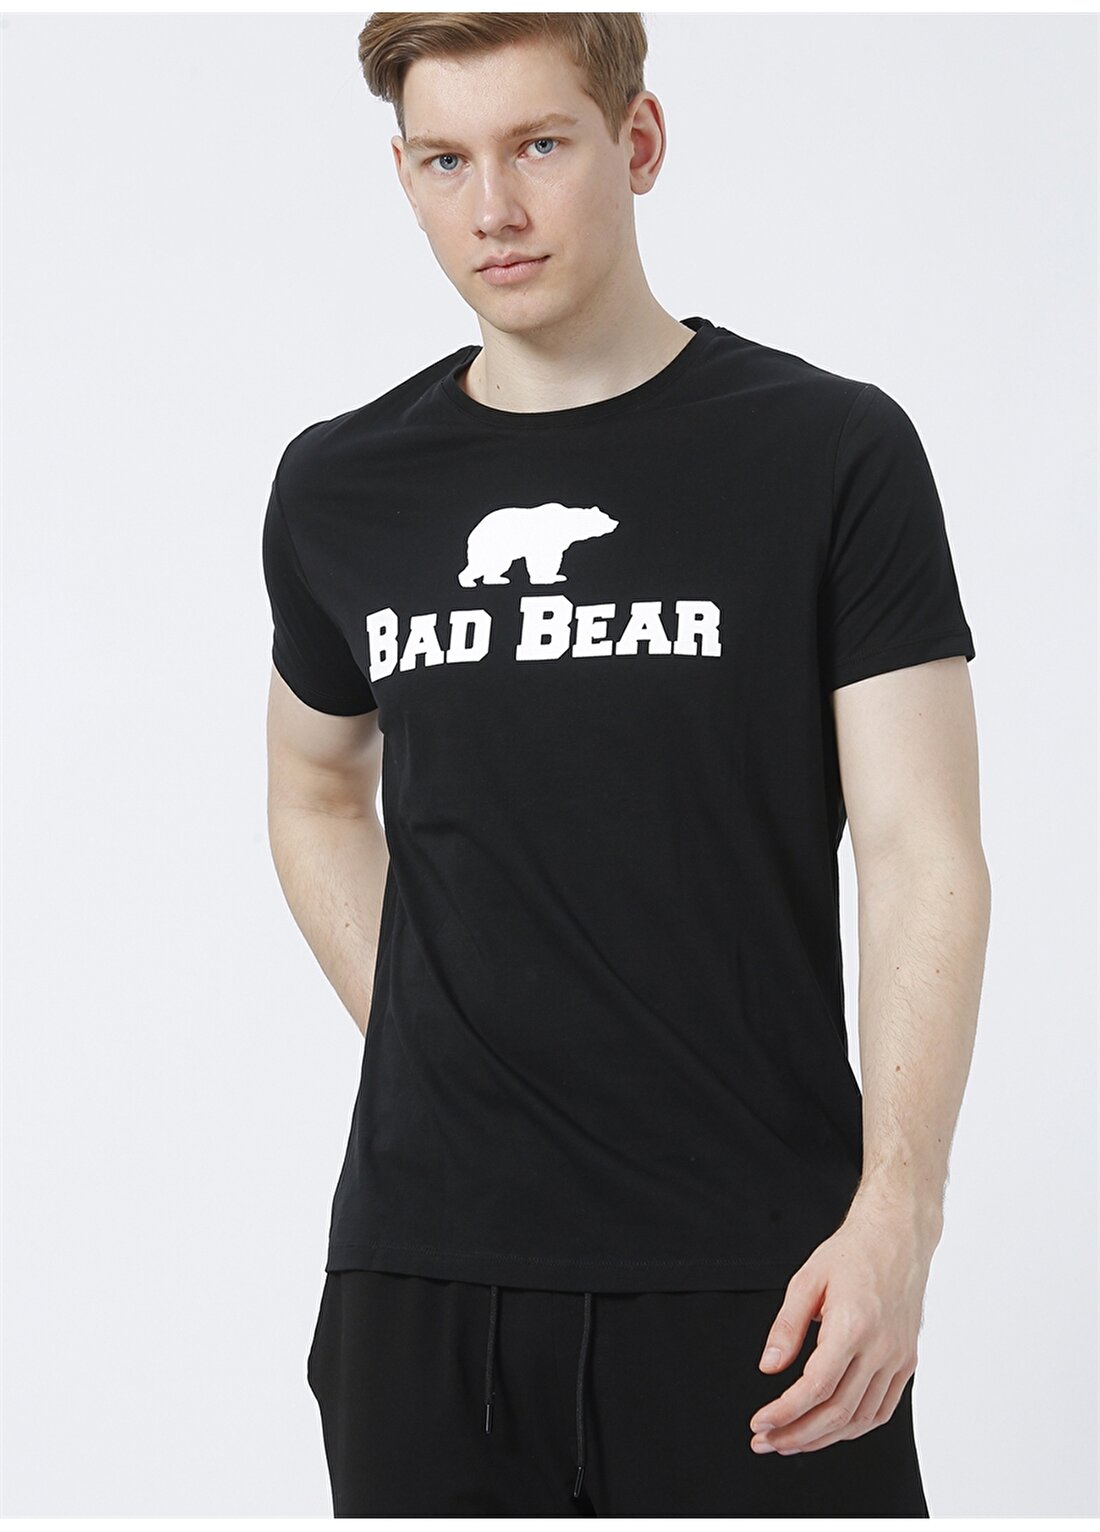 Bad Bear Night T-Shirt